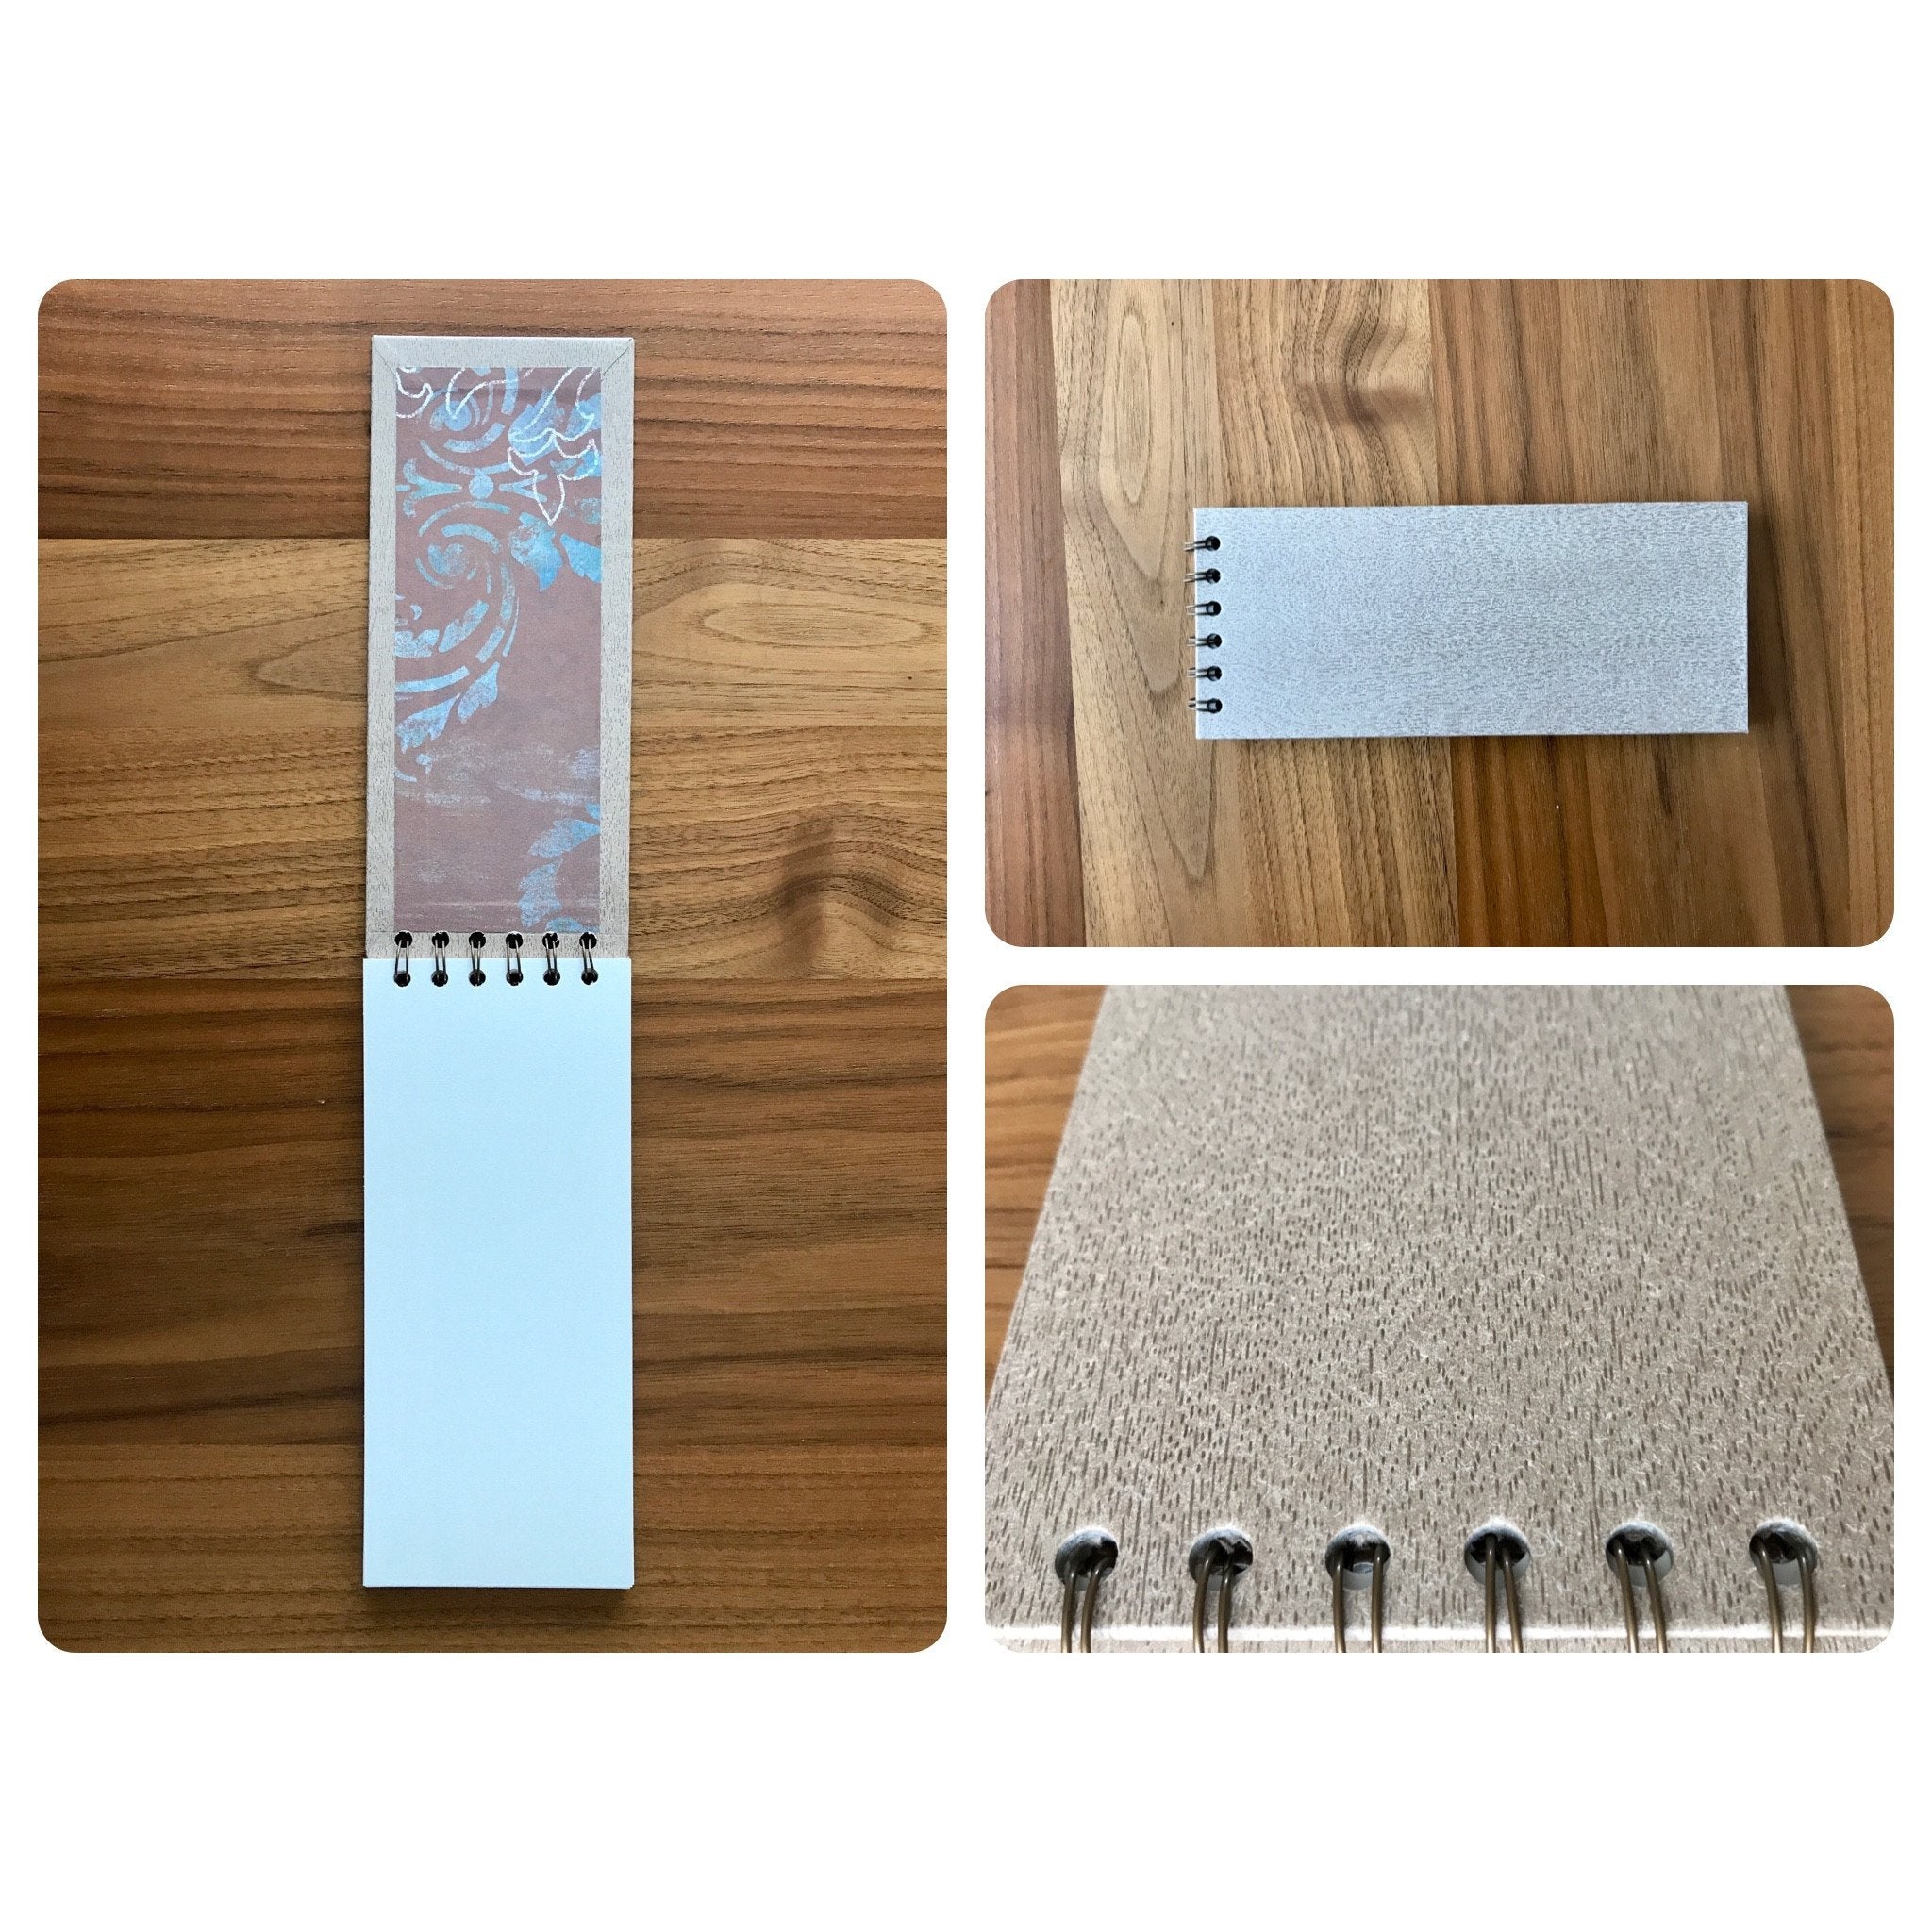 Cuaderno en papel simil madera - Black Sheep Handmade